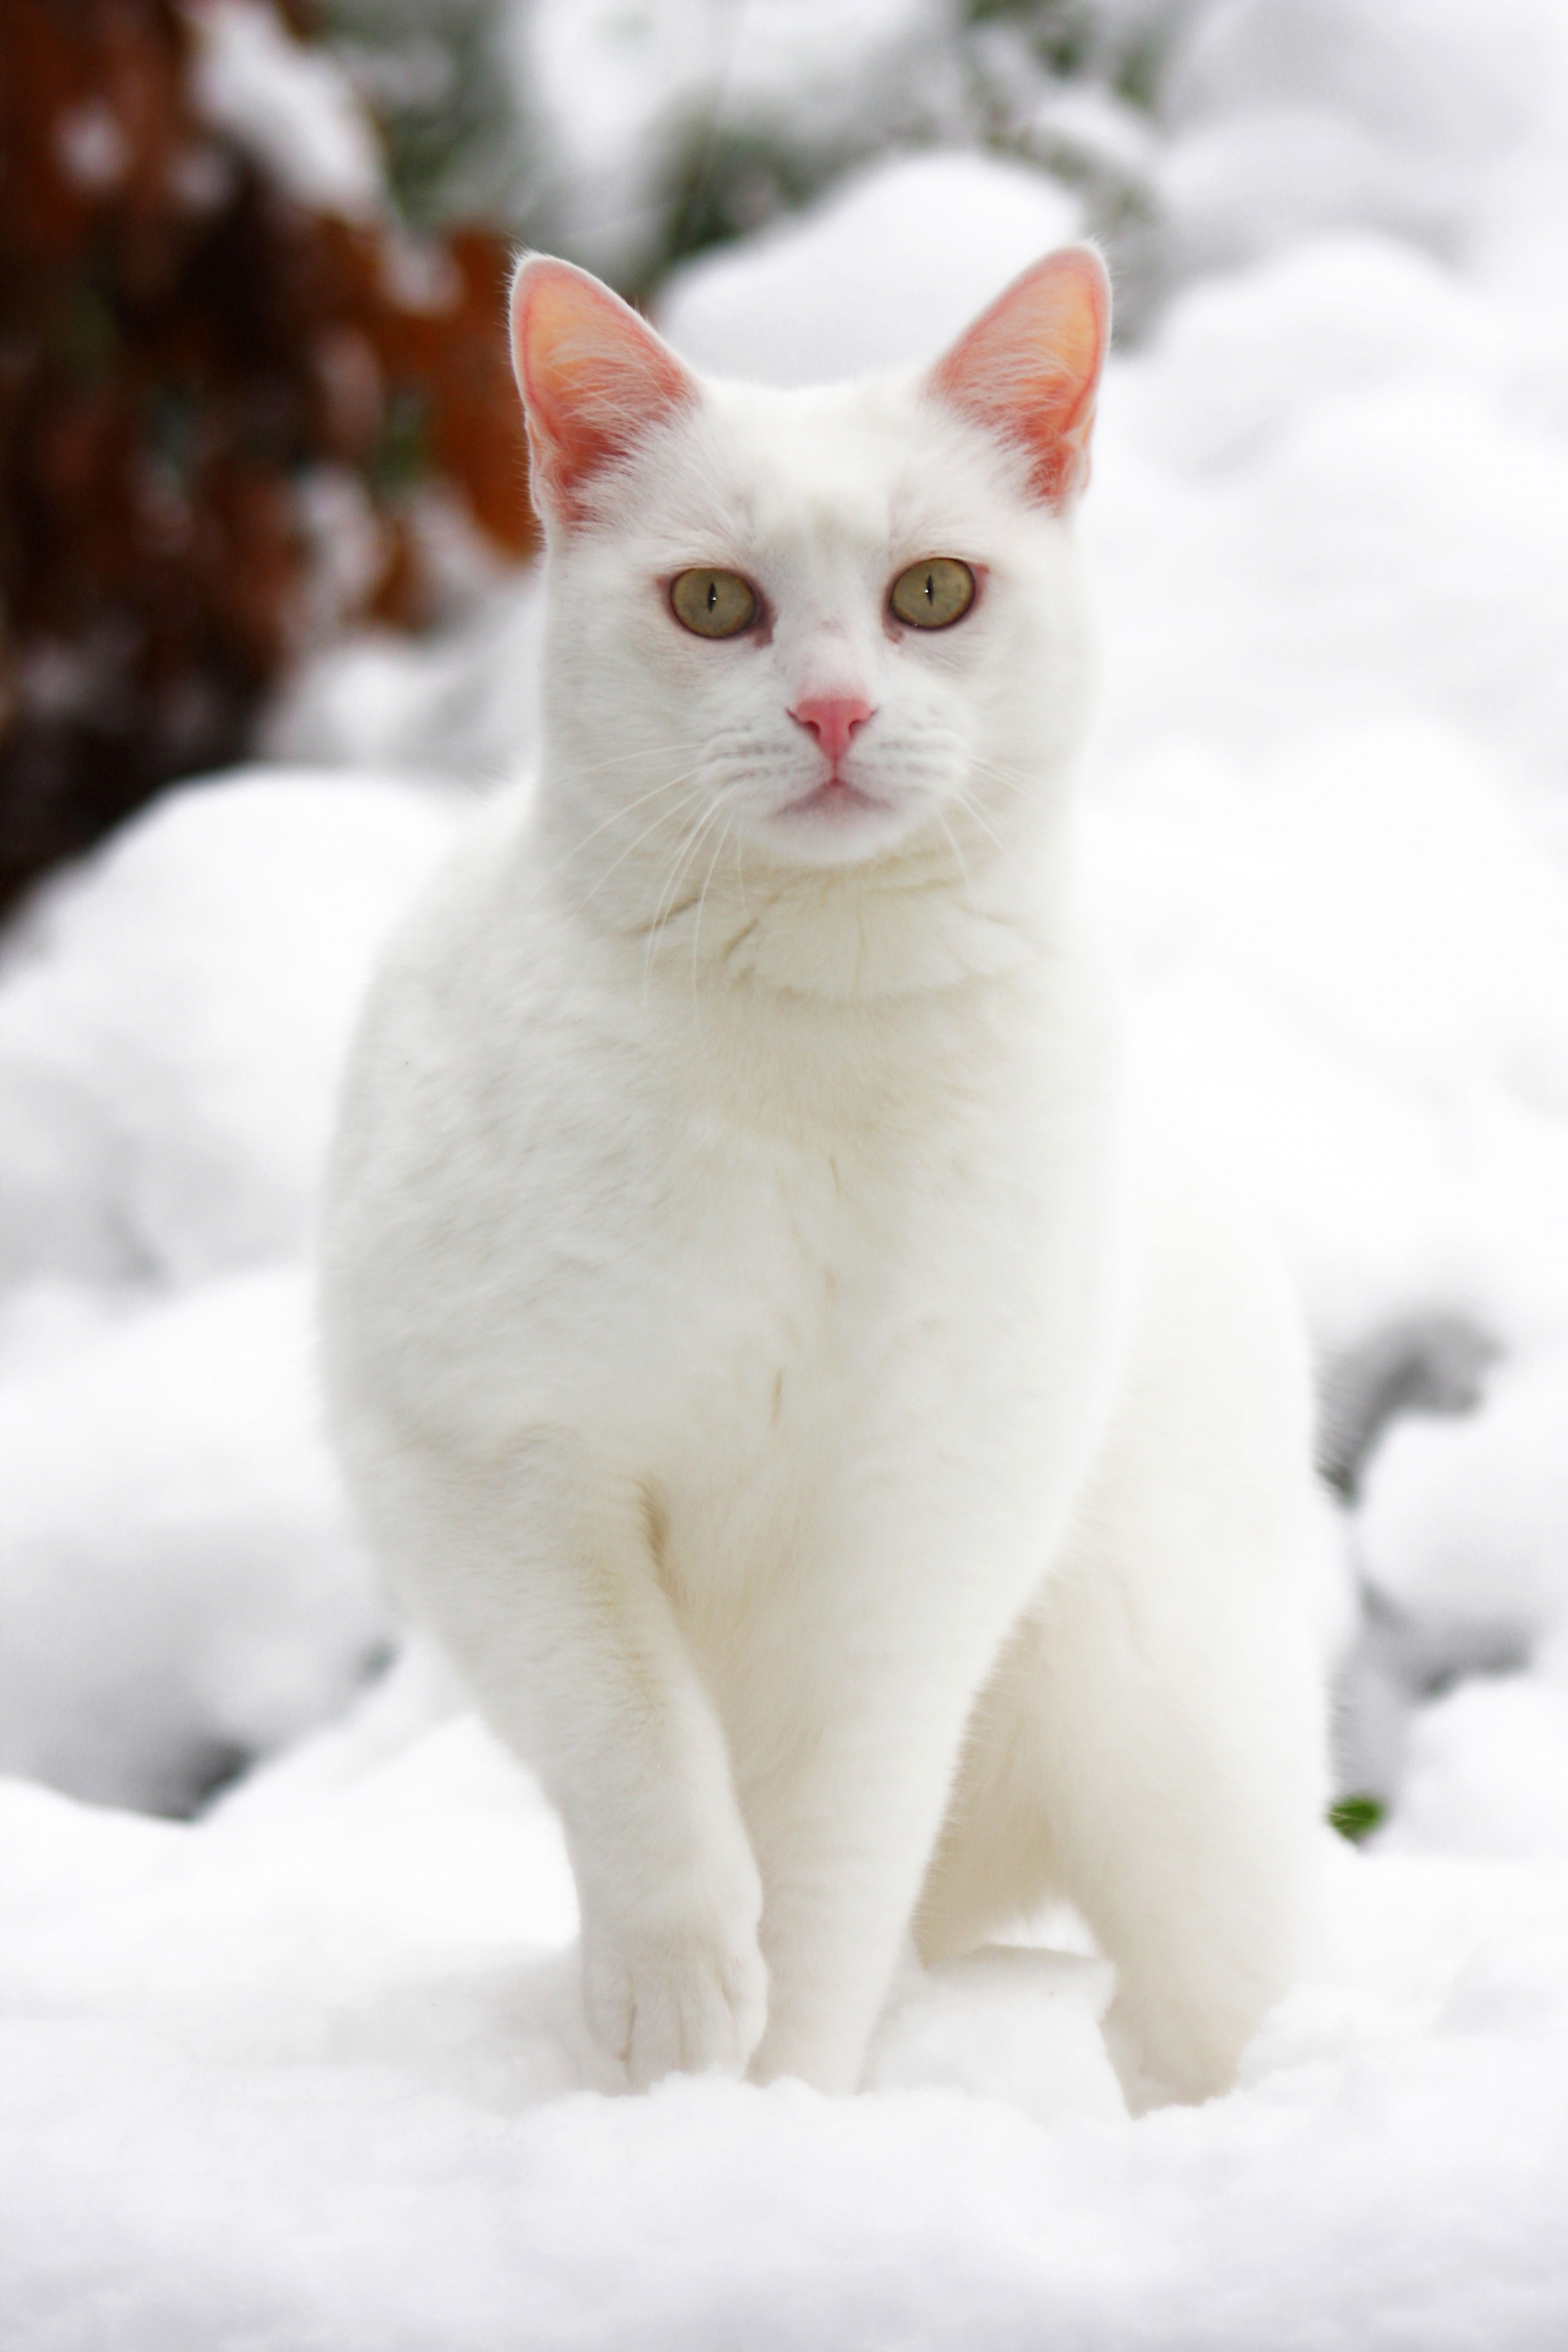 Katze im Schnee Fotoshooting Tierfotografie Bergisches Land Köln Katzenfotografie